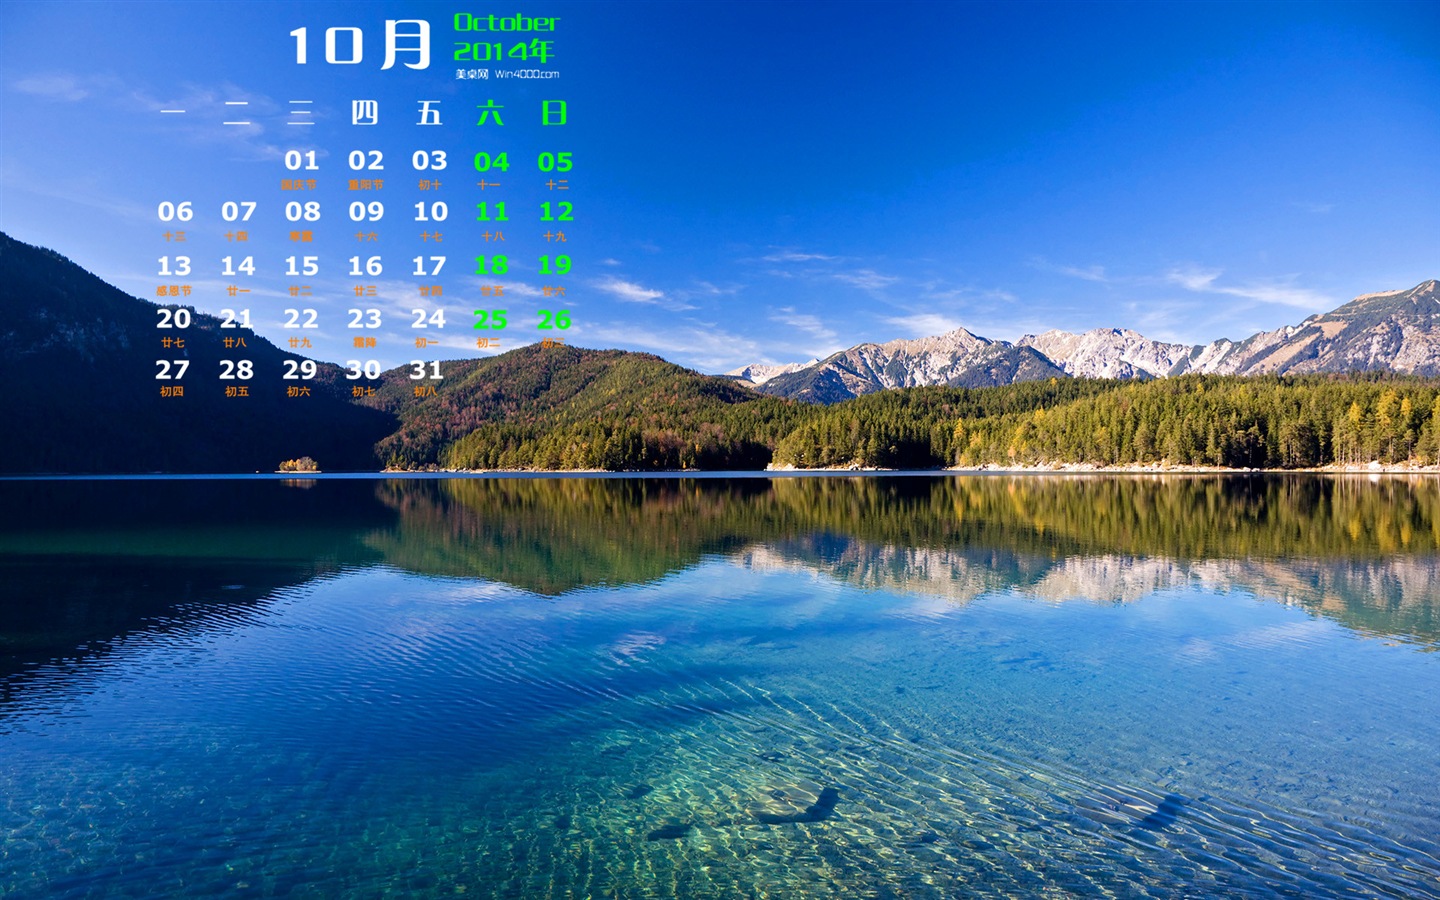 10 2014 wallpaper Calendario (1) #6 - 1440x900